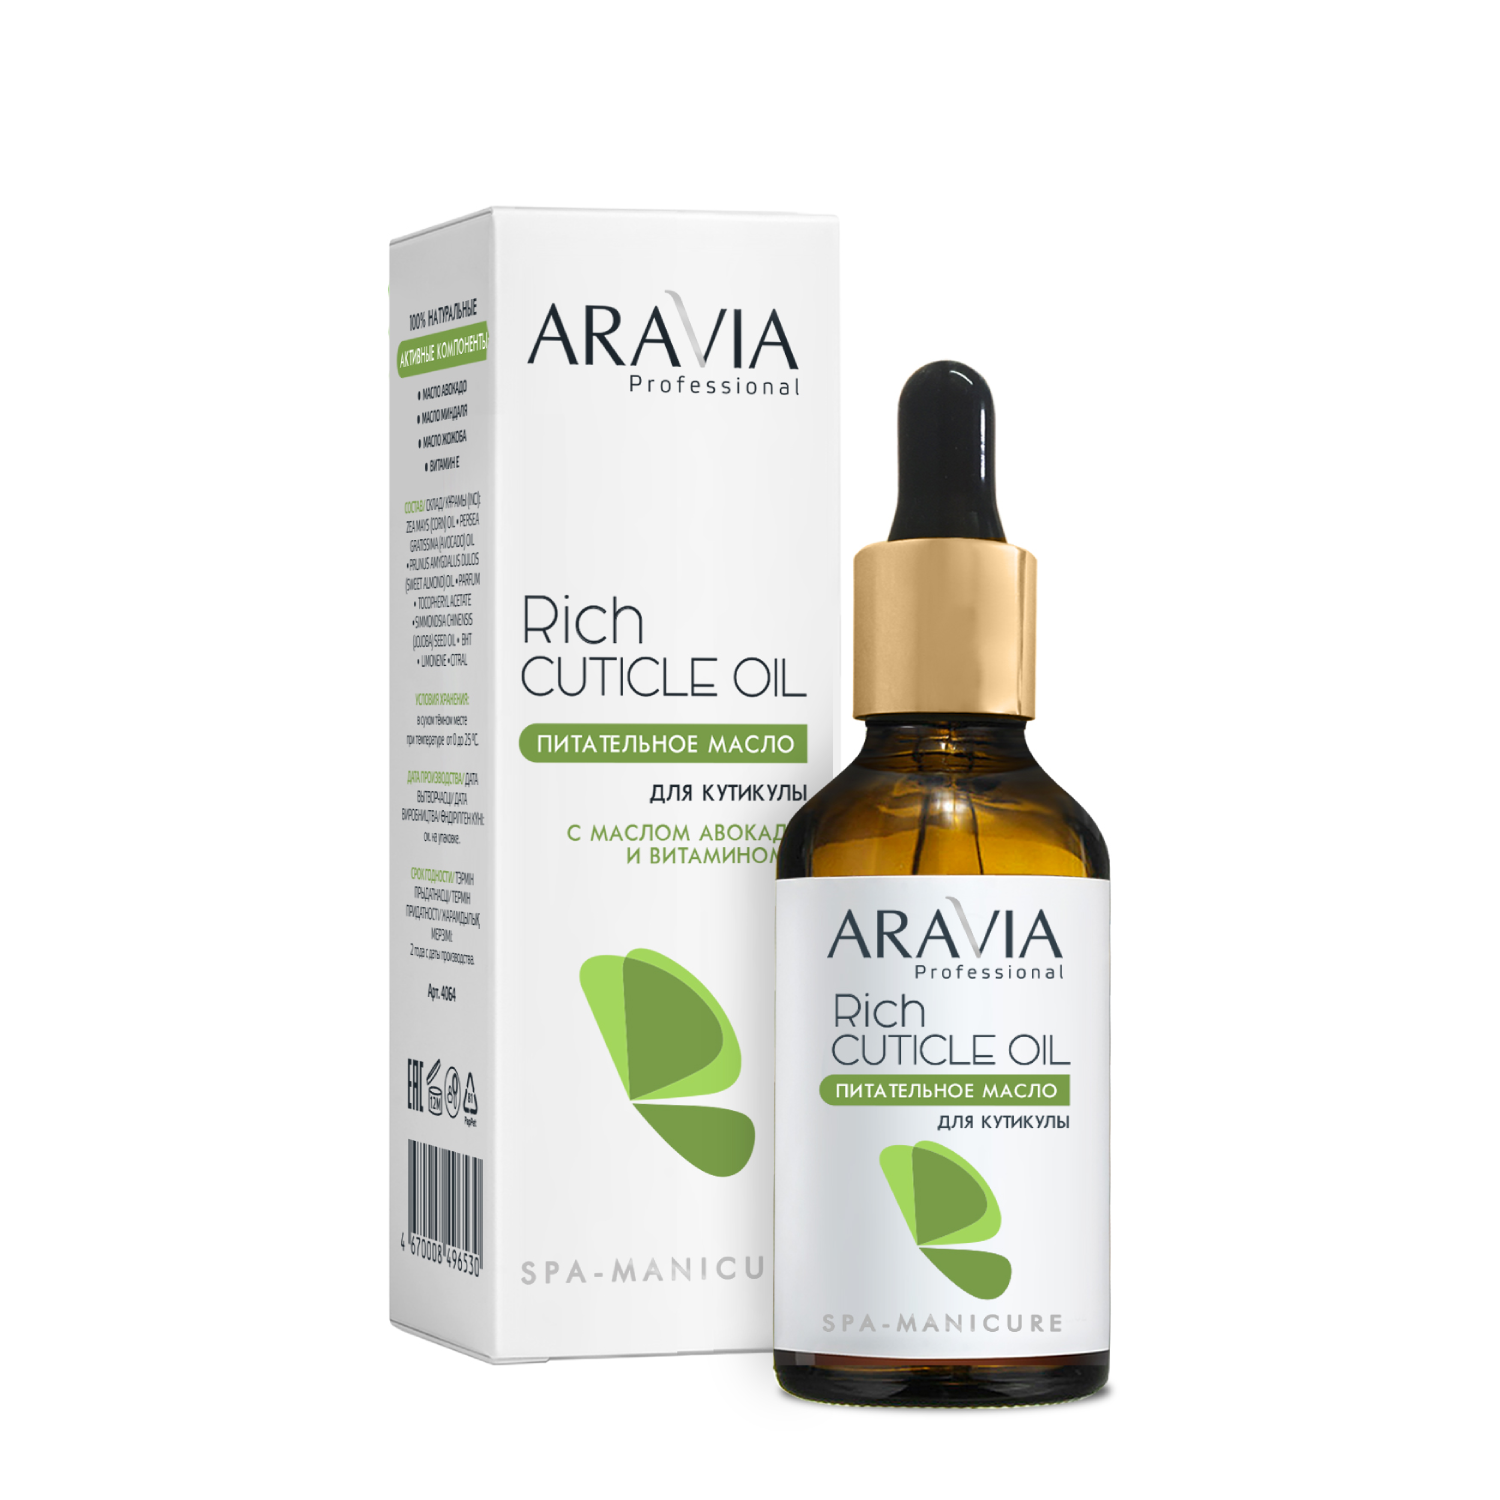 Aravia Professional Питательное масло для кутикулы с маслом авокадо и витамином E Rich Cuticle Oil, 50мл